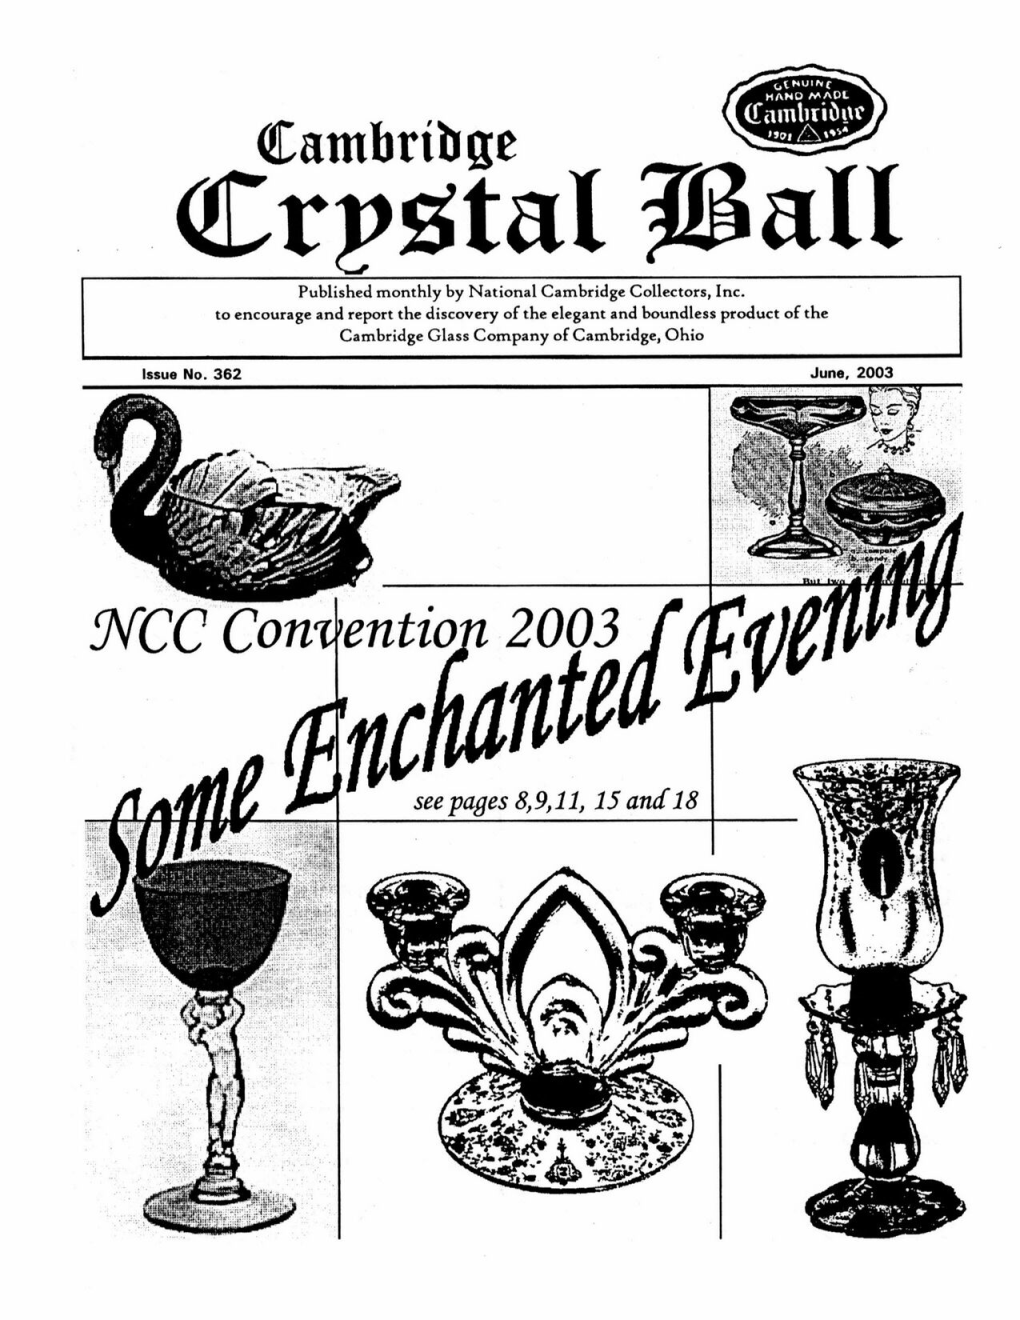 Crystal Ball Newsletter June 2003